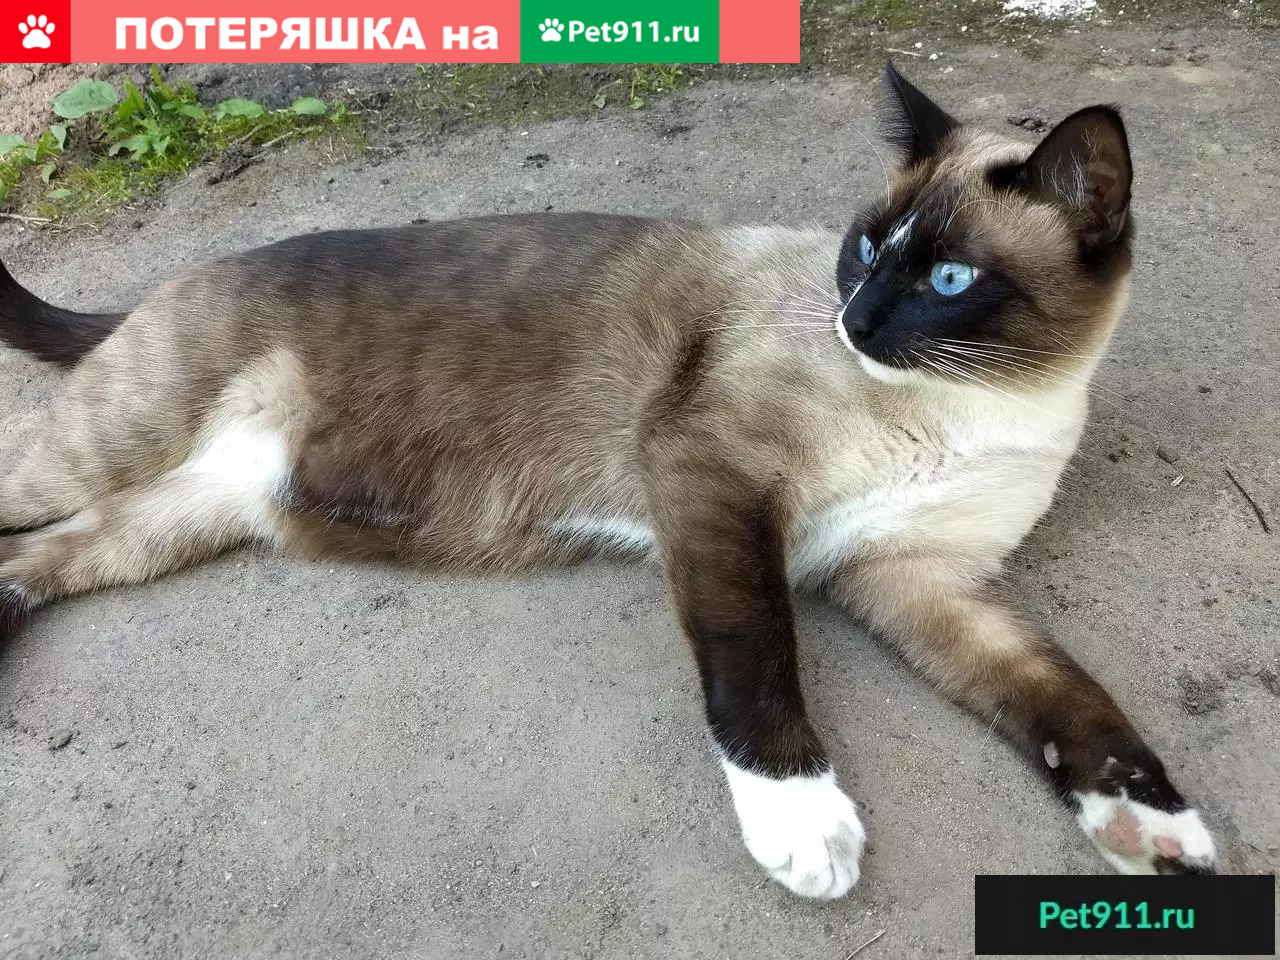 Пропал сиамский кот в д. Орудово, Тверская область